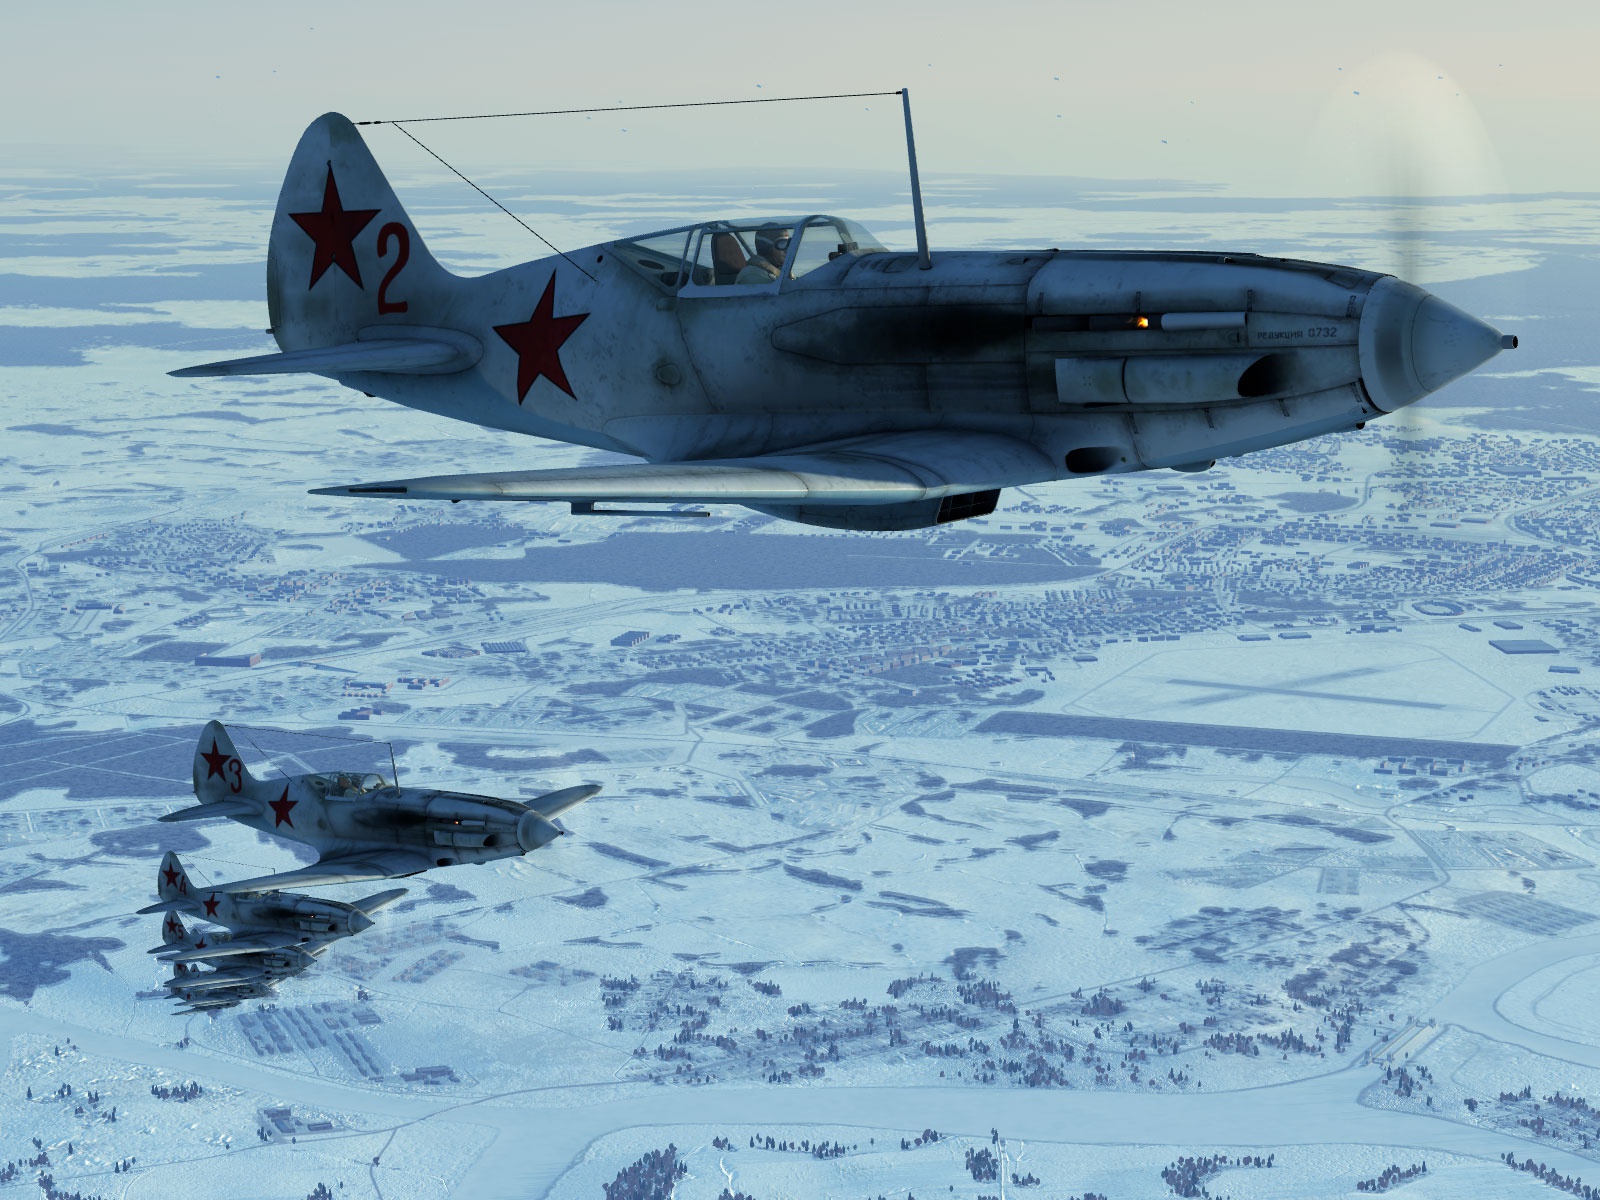 Скриншоты из российской компьютерной игры «Ил-2 Штурмовик». Данные варианты текстур, воссоздающие исторические окраски самолётов, выполнены Максимом Брянским